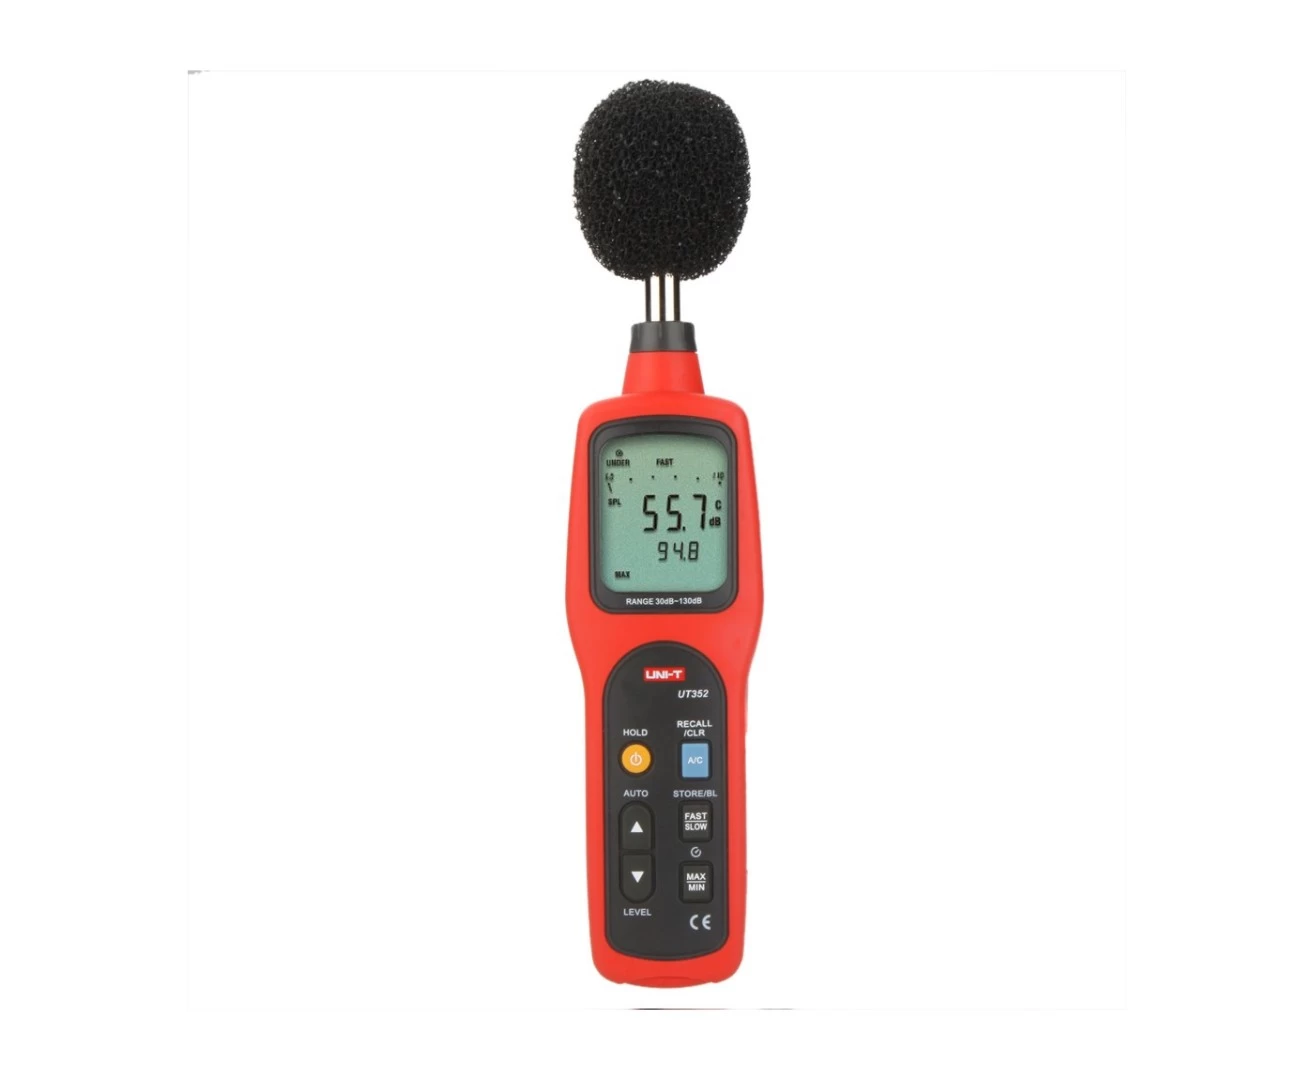 Измеритель уровня шума UT352 - 2